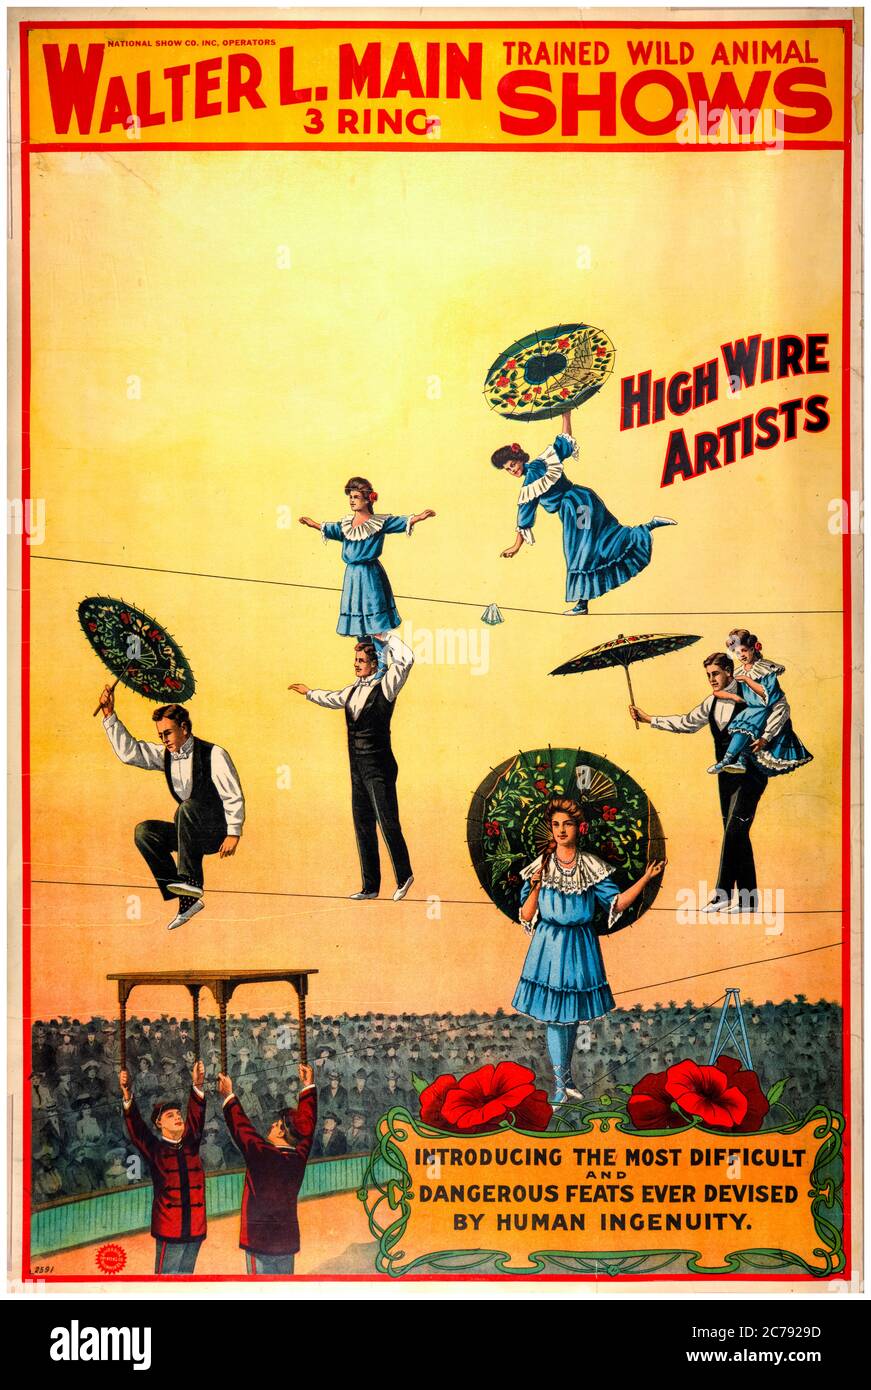 Walter L main 3 ring formé animaux sauvages montre une affiche de cirque avec de hauts interprètes de fil, 1890-1904 Banque D'Images